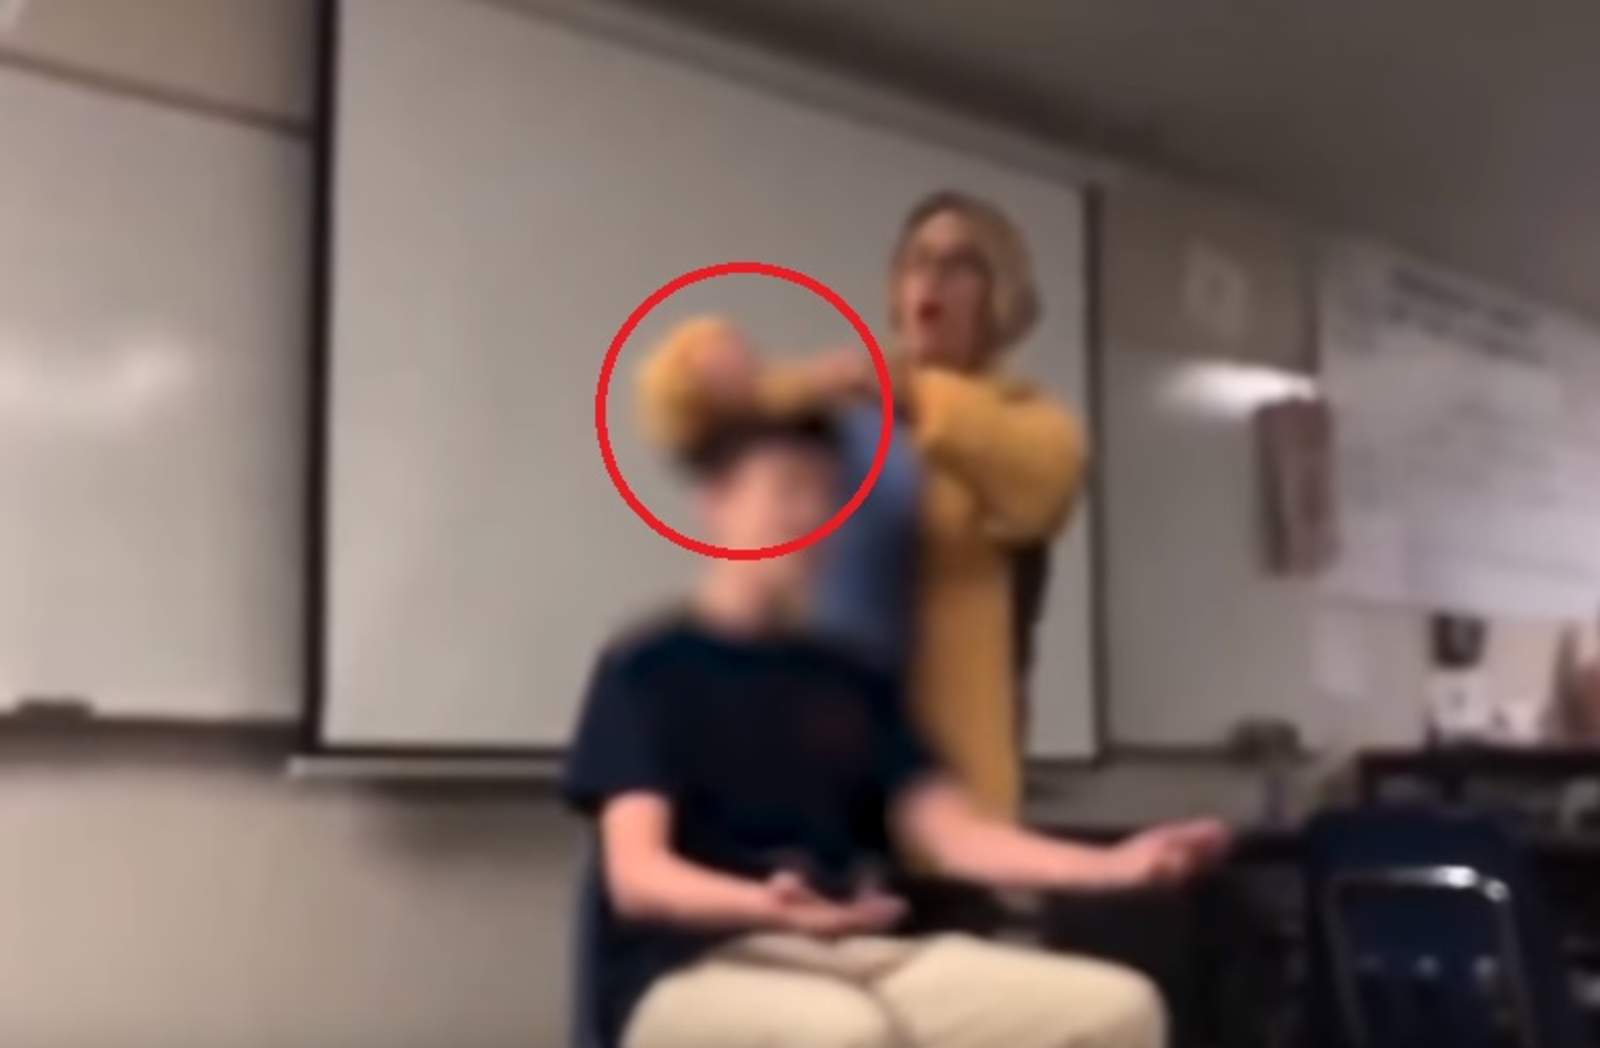 Maestra enfrenta cargos por cortar el cabello de sus alumnos